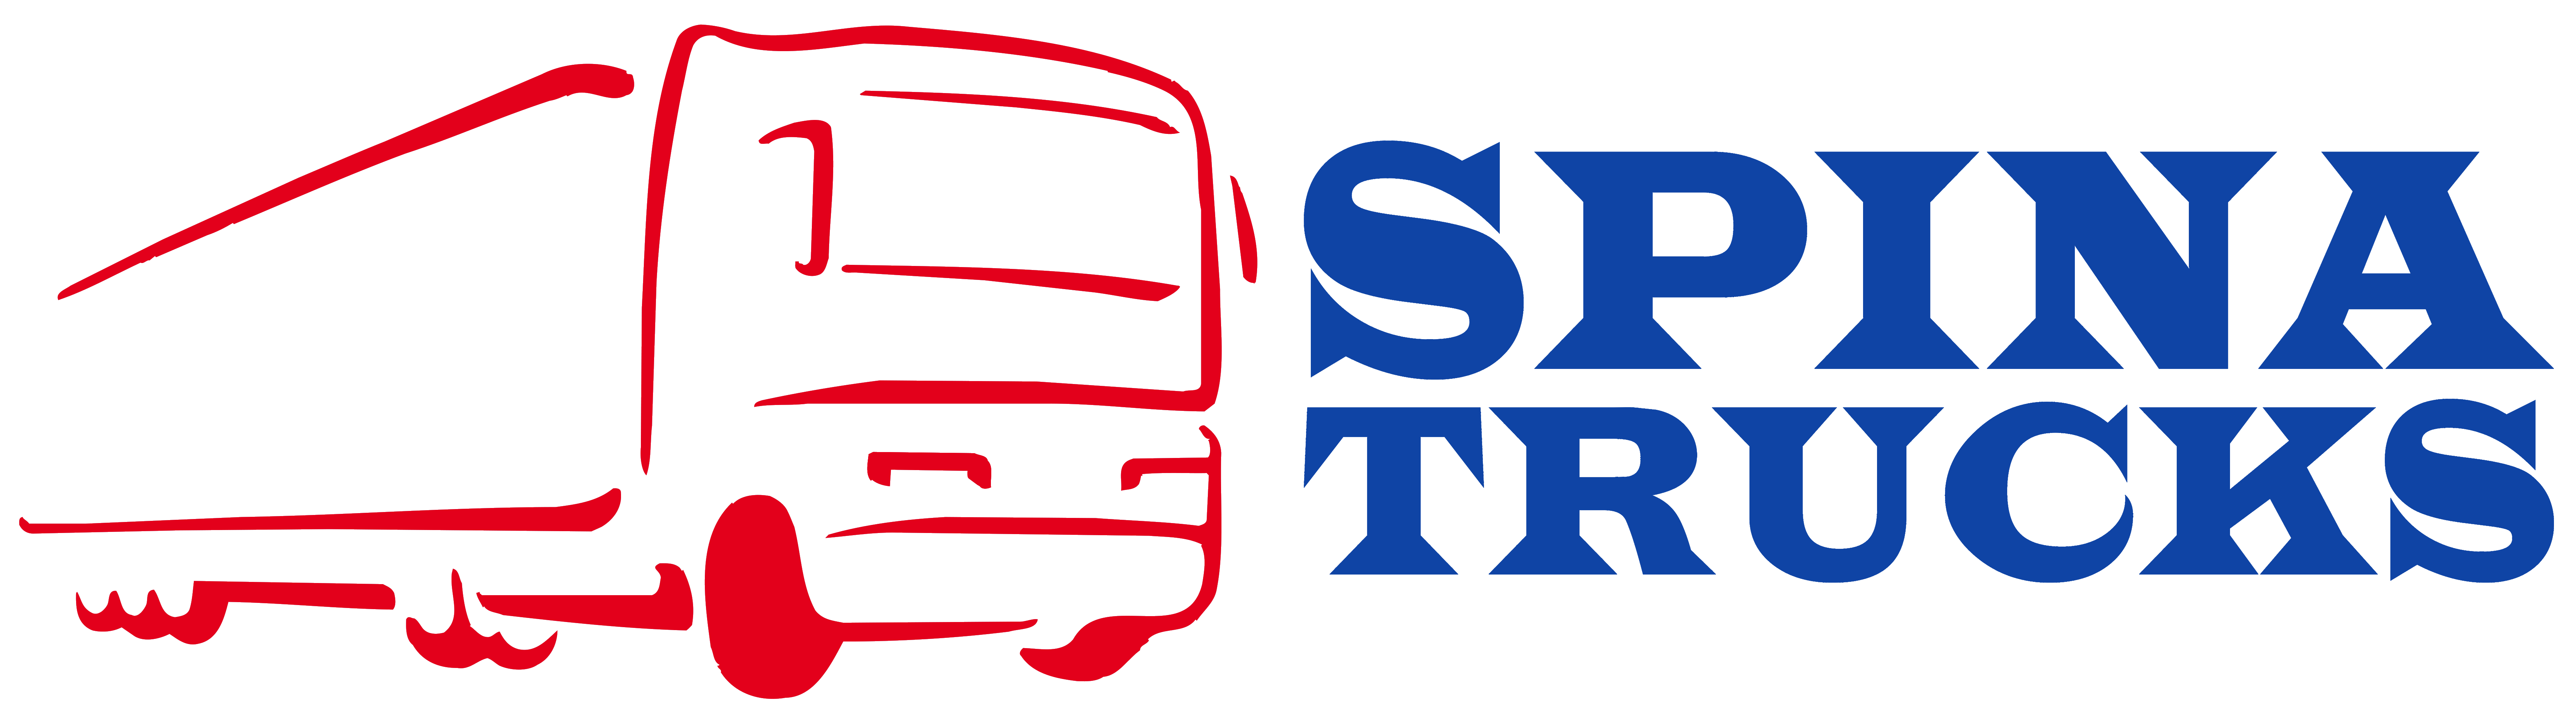 Spina Trucks Srl